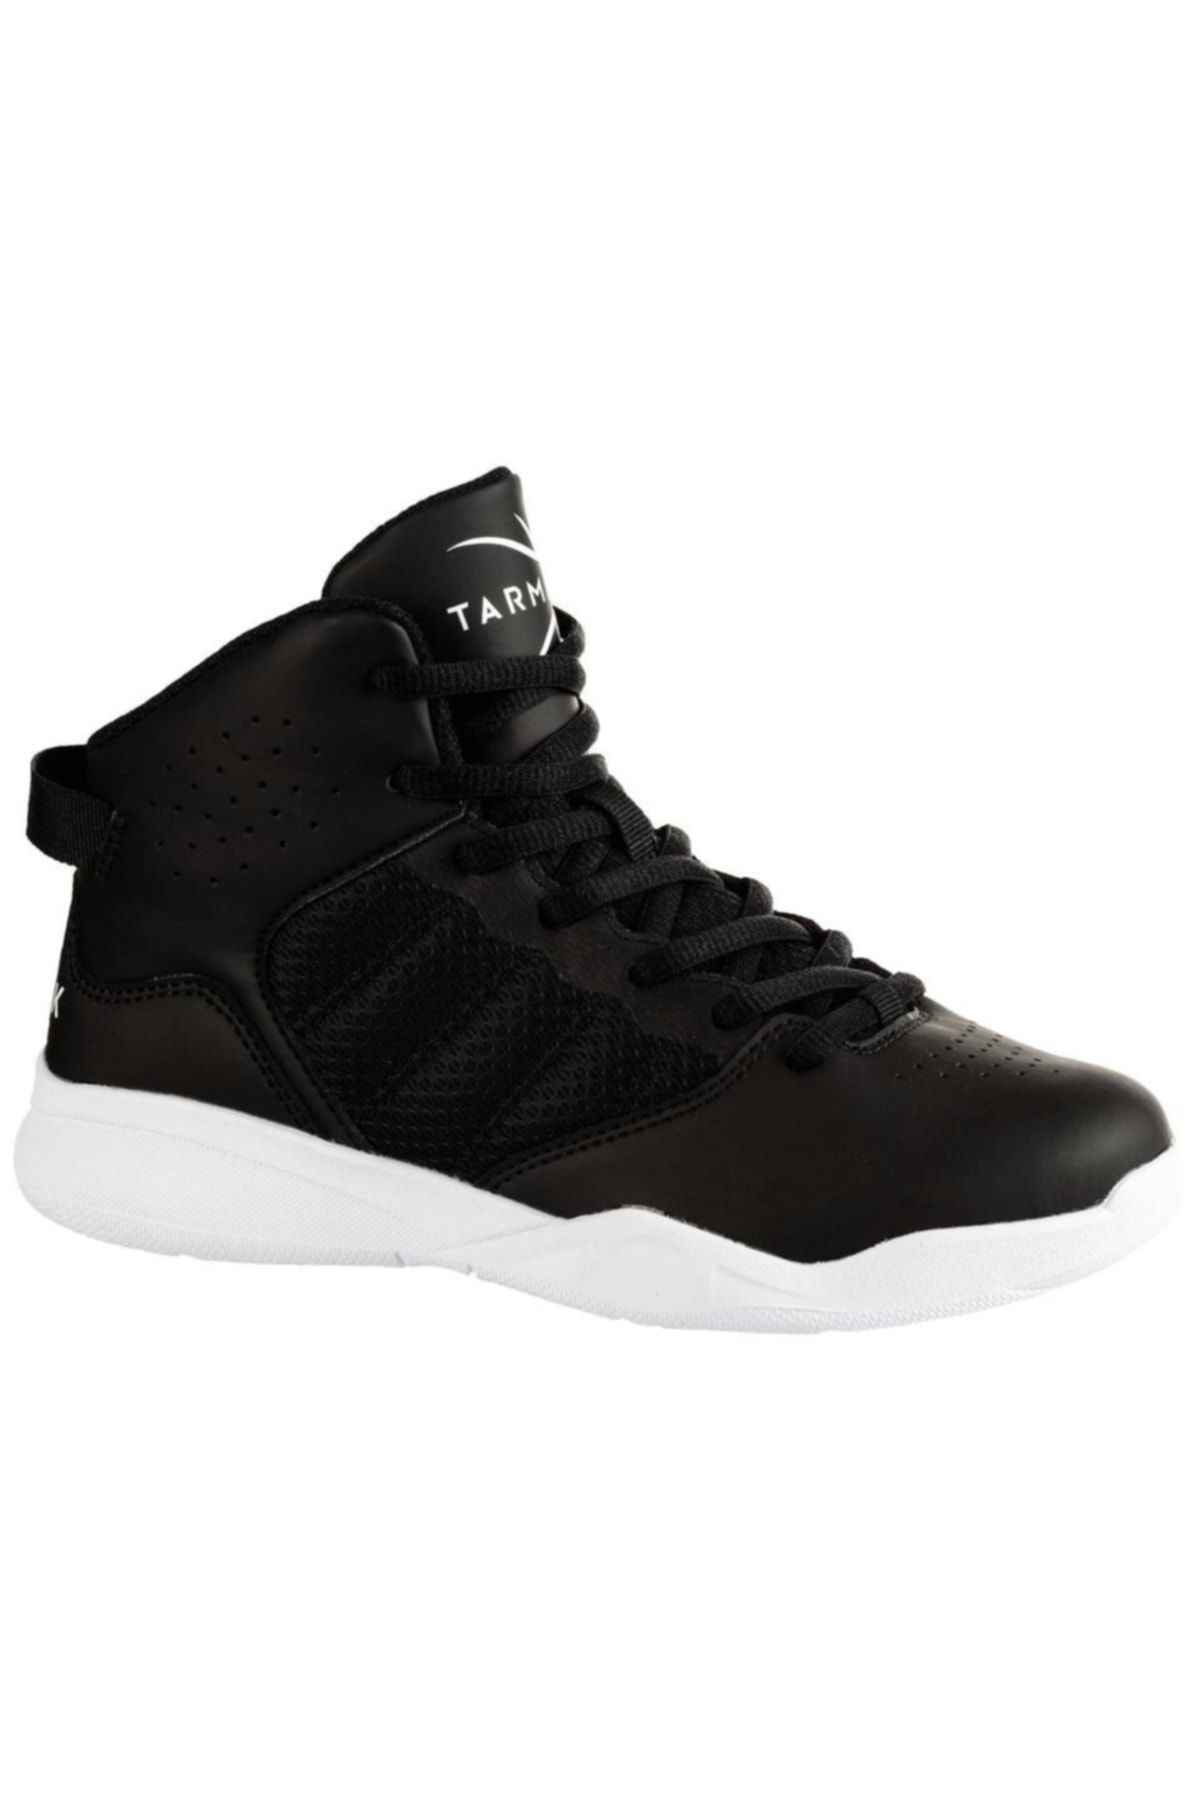 Decathlon - Basketbol Ayakkabısı Boğazlı Ayakkabı Çocuk Basketbol Ayakkabısı Çocuk Ayakkabı Siyah